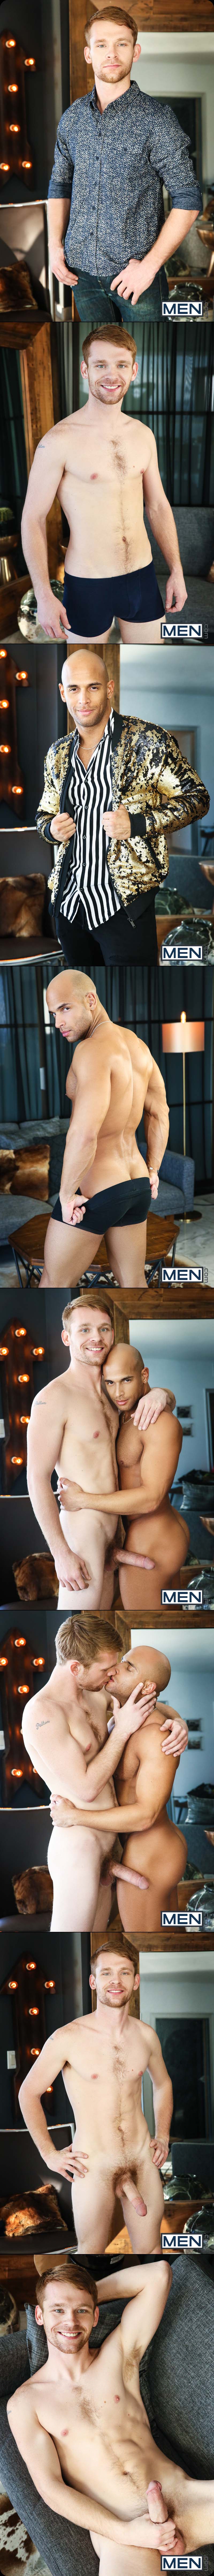 MEN.com's Fab 3, Part Three: A Gay XXX Parody (Calhoun Sawyer Fucks Sean Zevran) at MEN.com